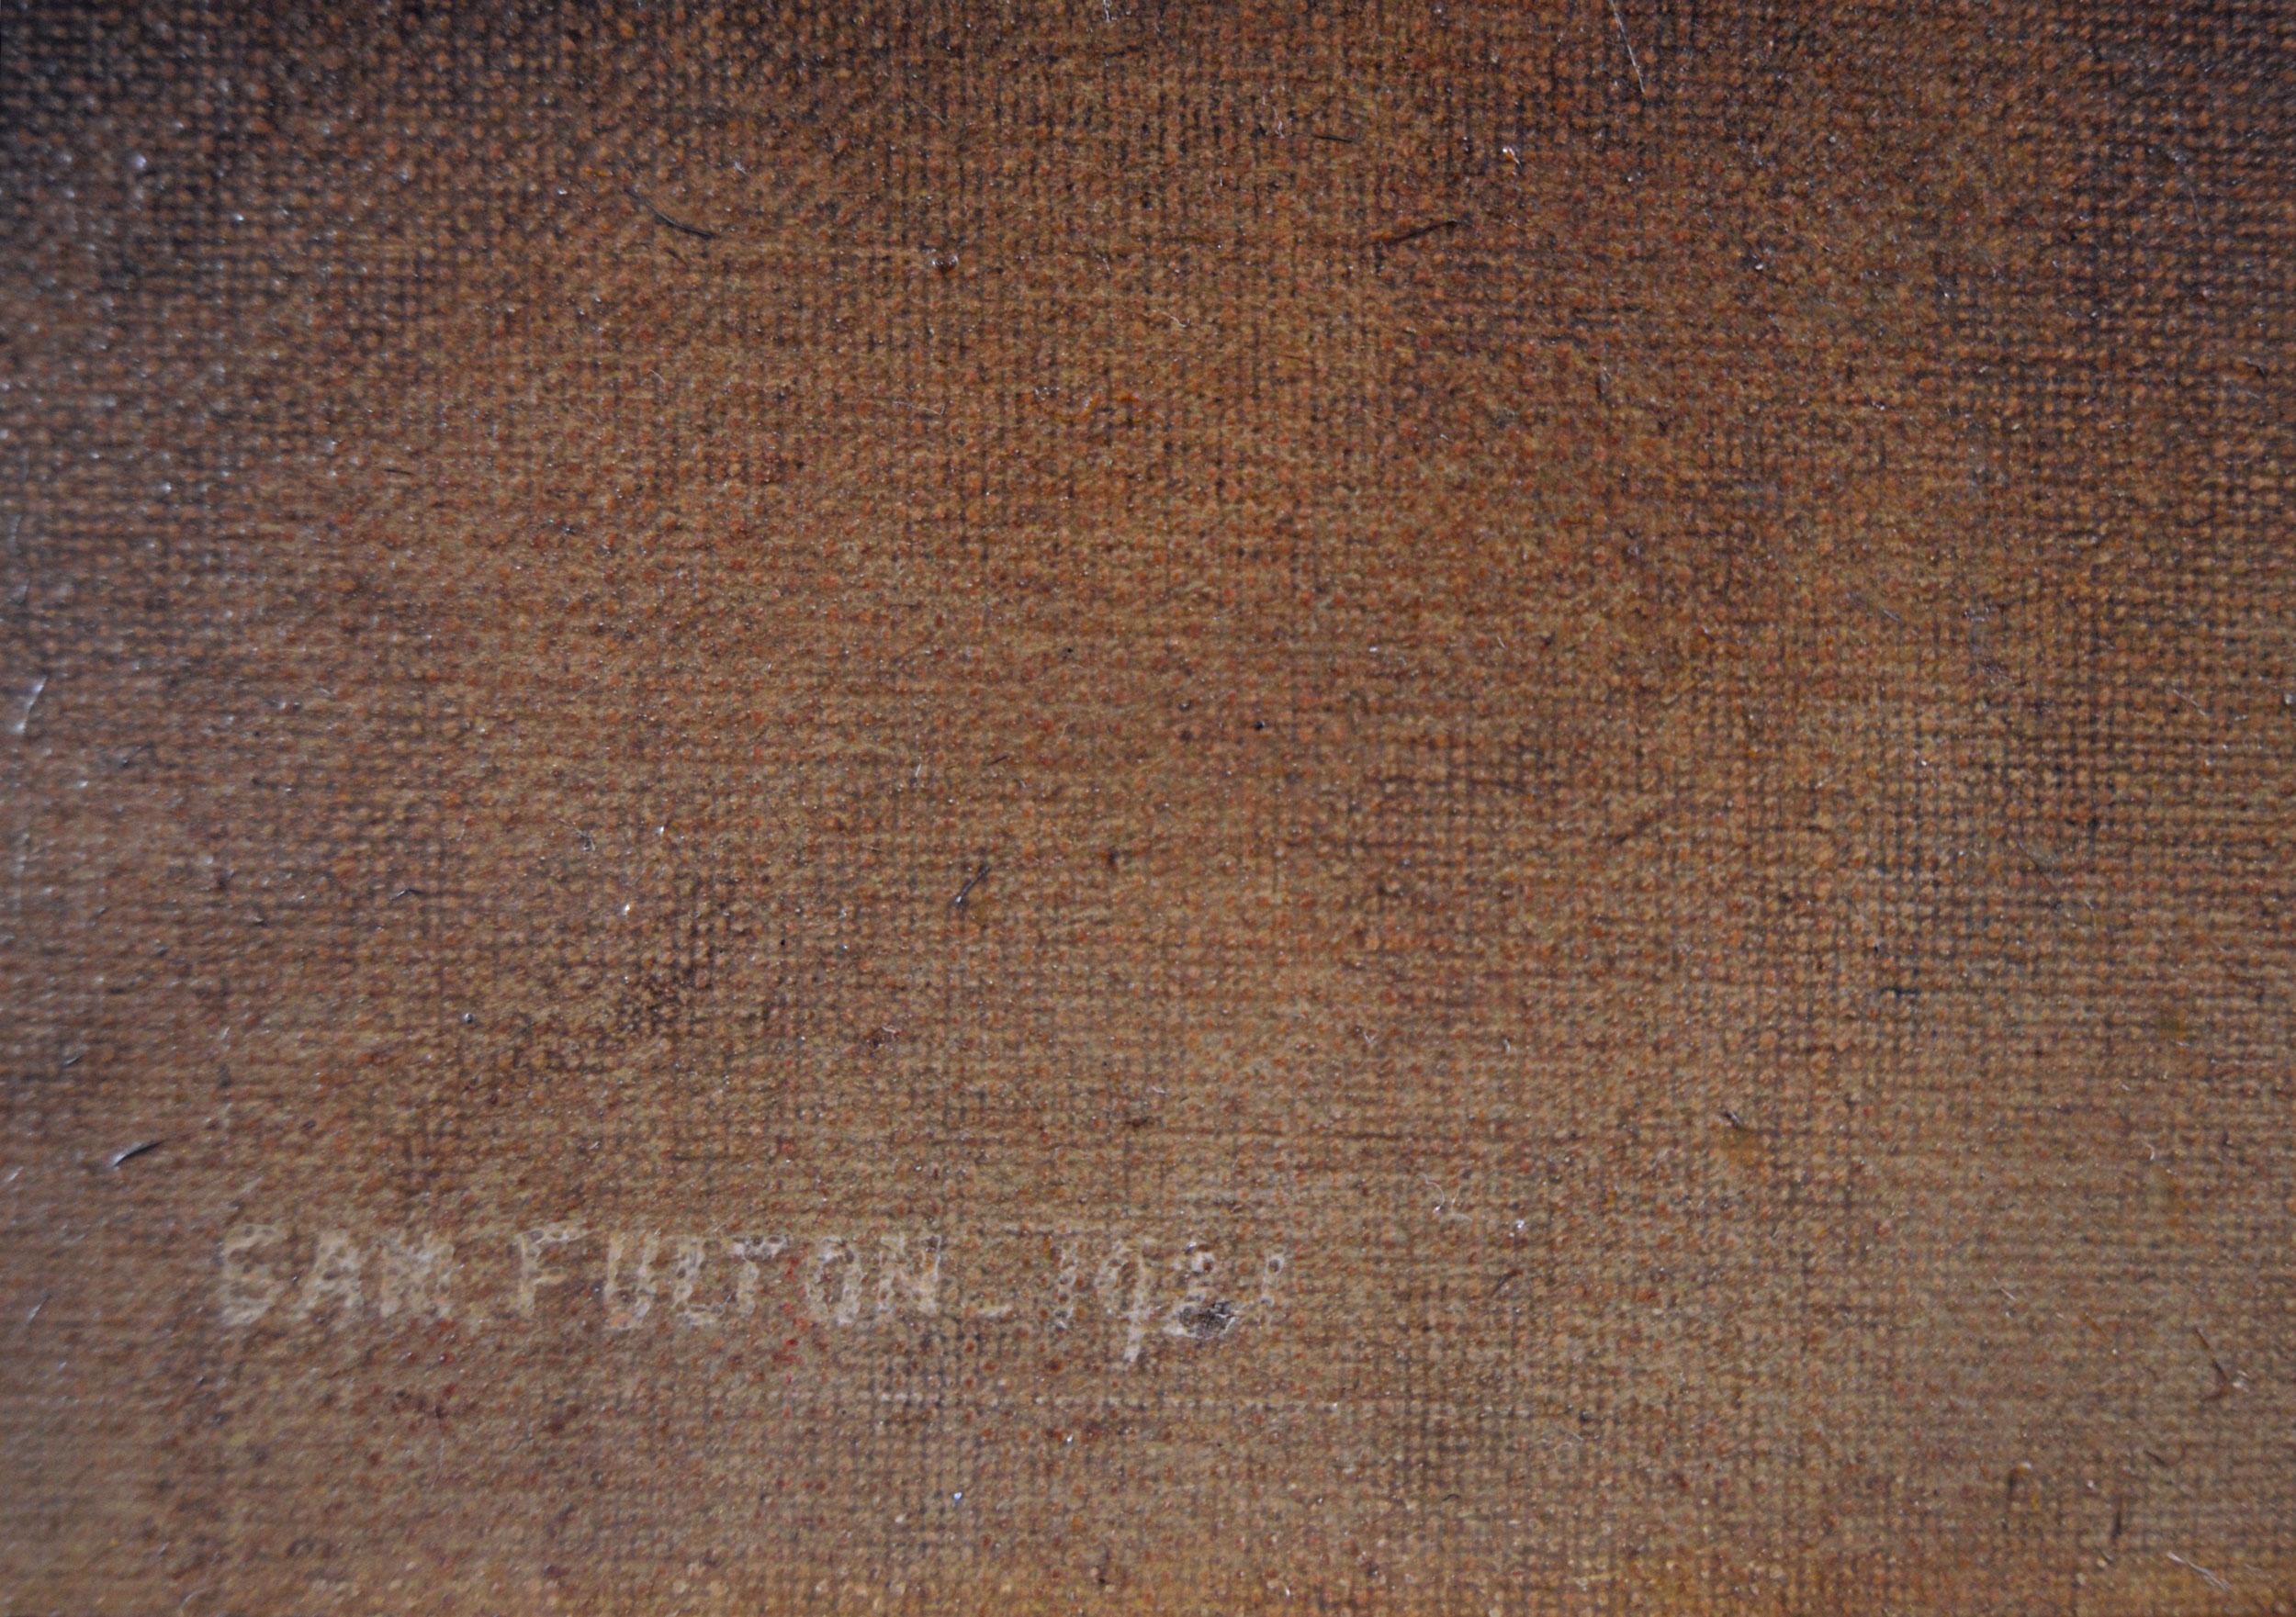 Samuel Fulton
Écossais, (1855-1941)
Un terrier du West Highland
Huile sur toile, signée et datée de 1921
Taille de l'image : 17.5 pouces x 13.5 pouces 
Taille, cadre compris : 26,5 pouces x 22,5 pouces.

Samuel Fulton est né à Glasgow le 26 avril